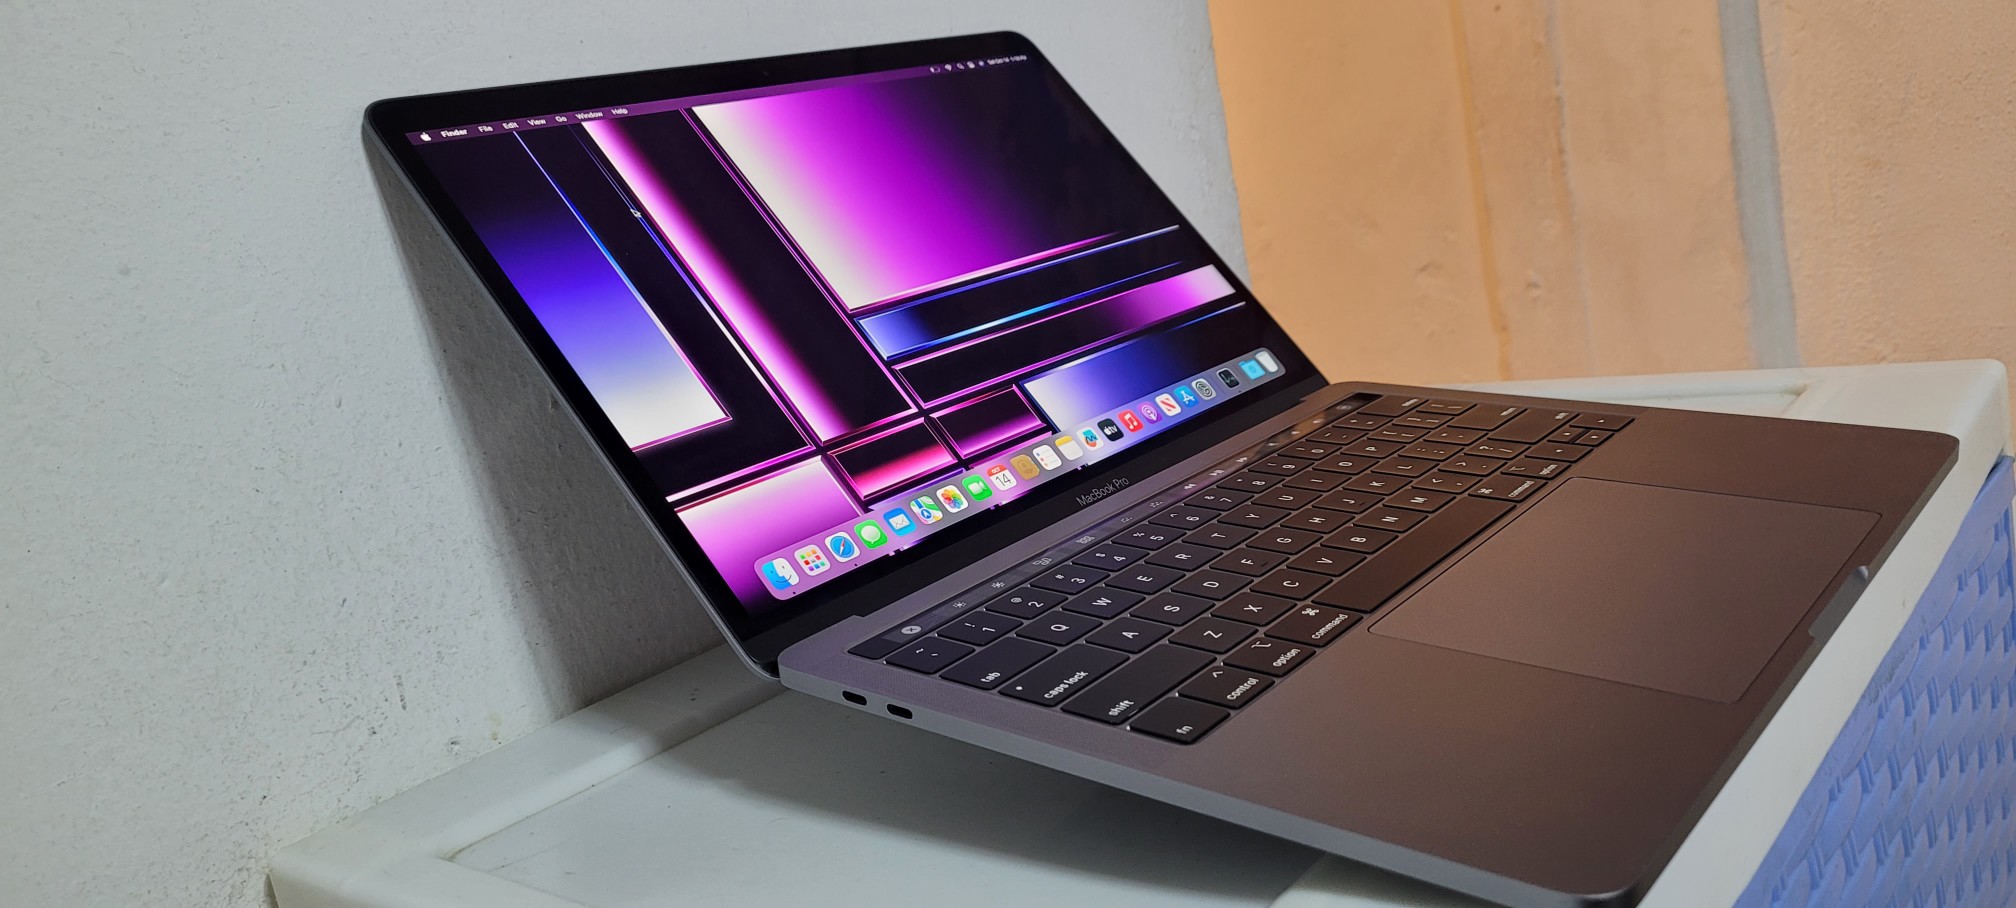 computadoras y laptops - Macbook pro A1989 13 Pulg Core i7 Ram 16gb Disco 512gb año 2018 1